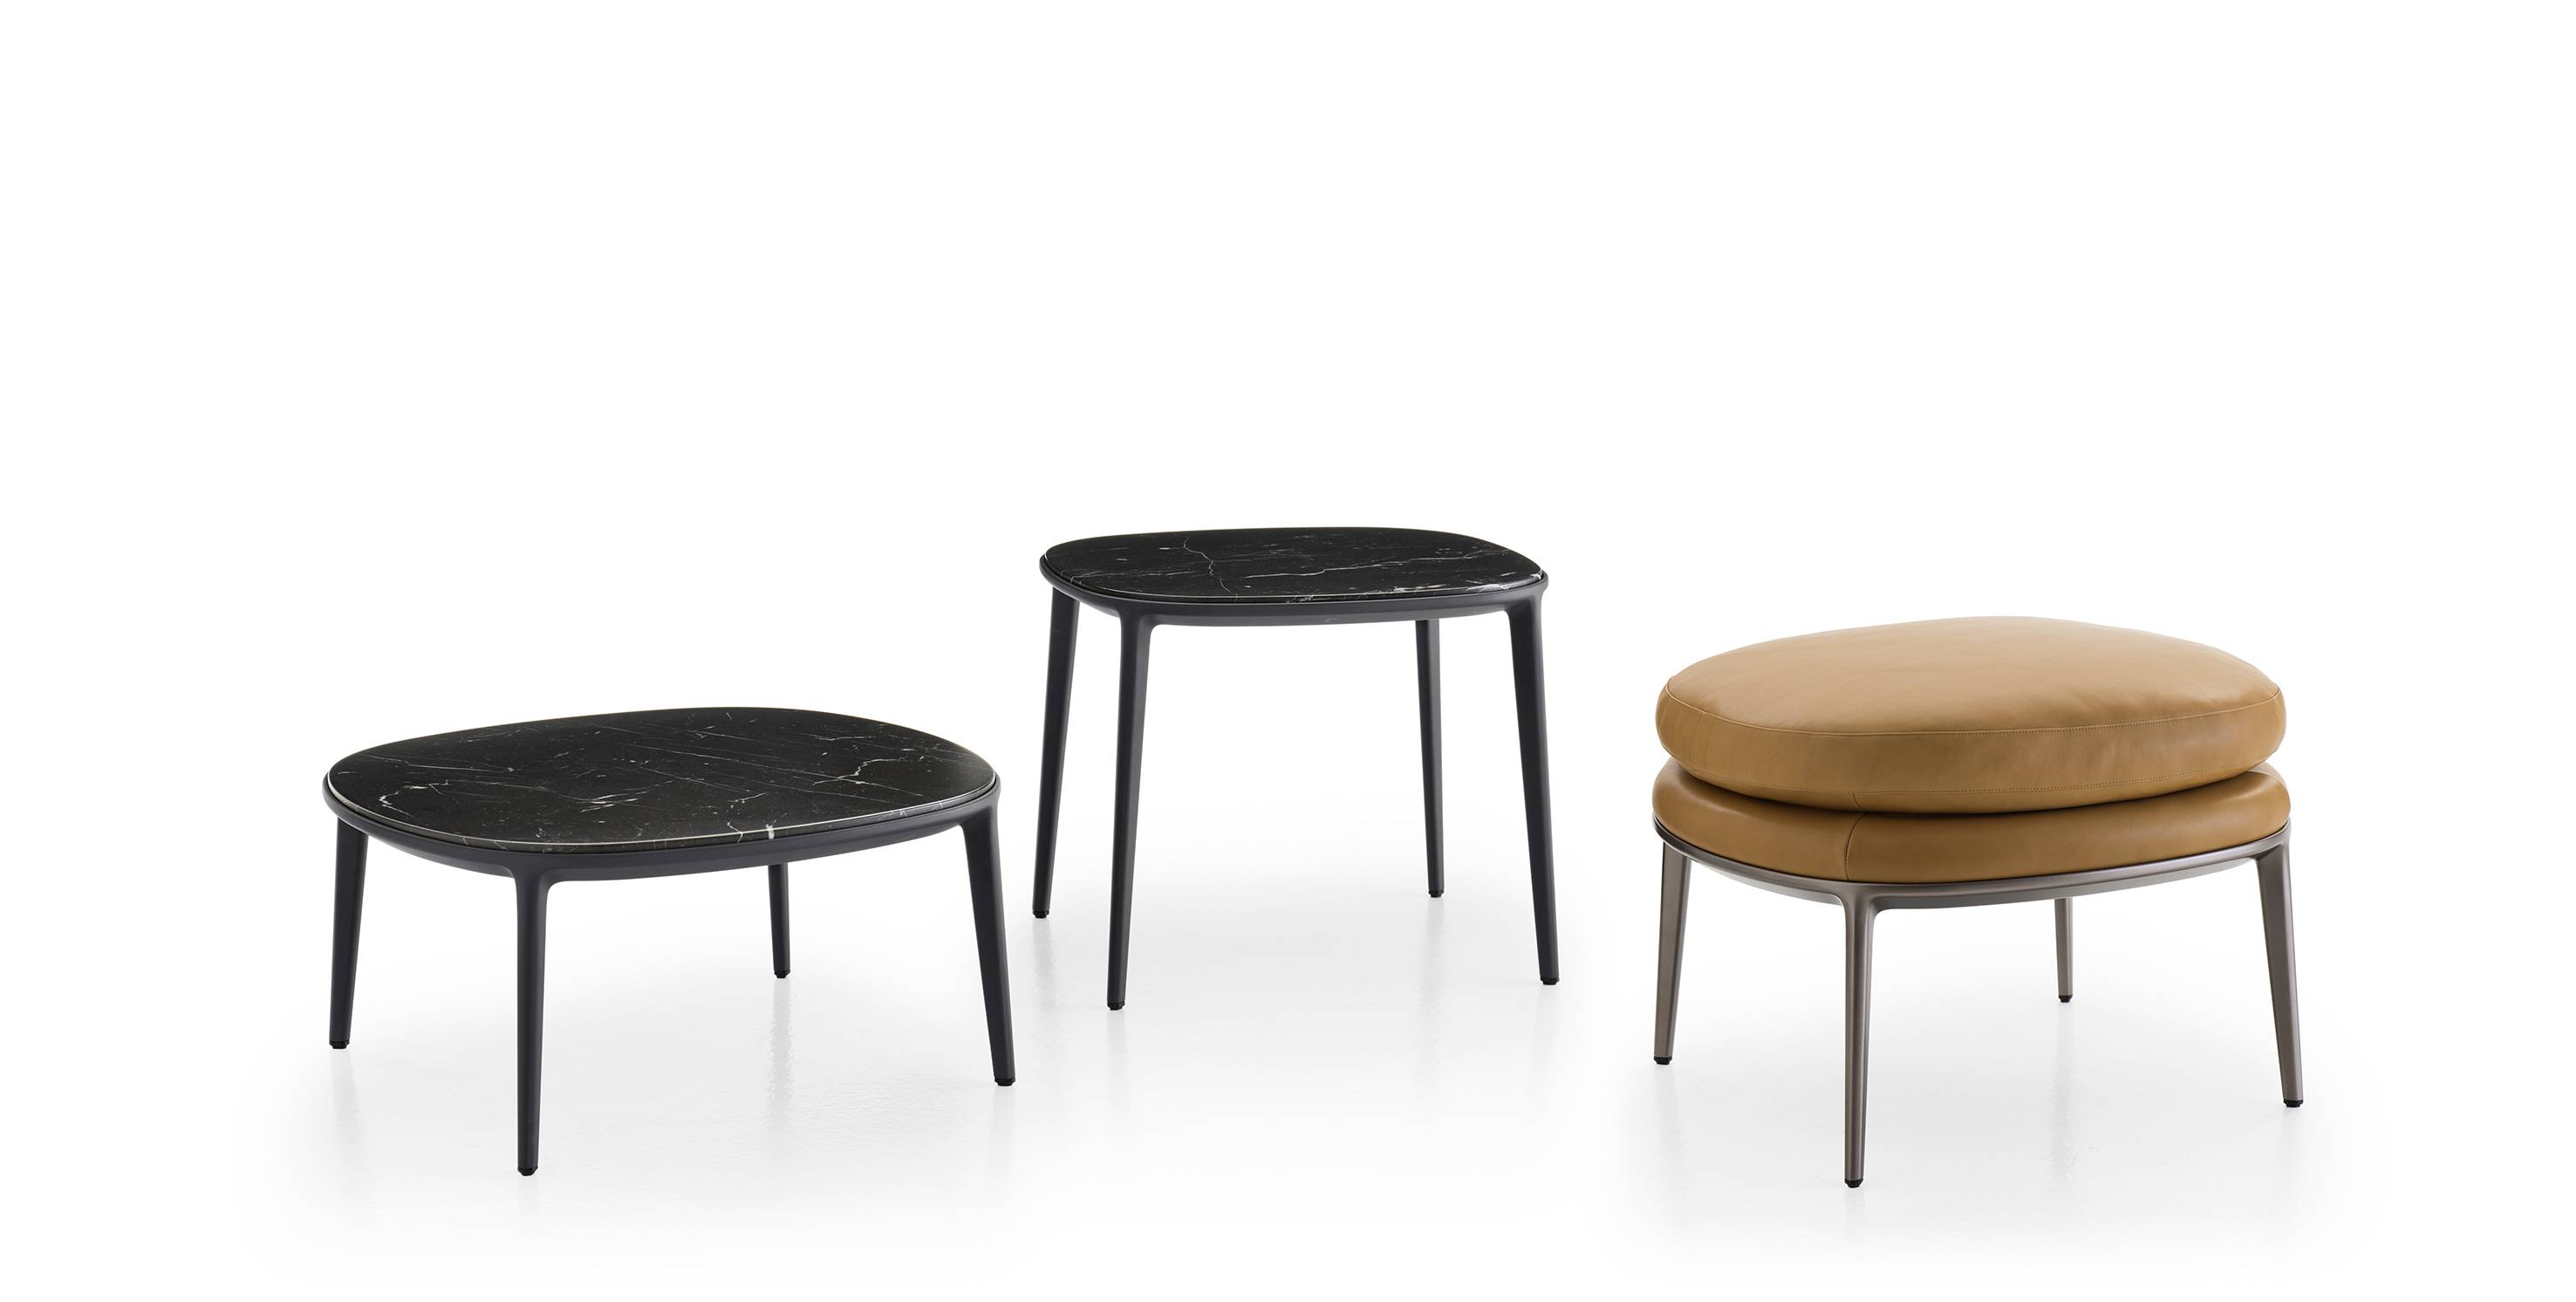 B&B italia design 2018, “Caratos”, chaises, fauteuils, poufs et tables basses en aluminium par moulage métallique, verni graphite ou ambre.